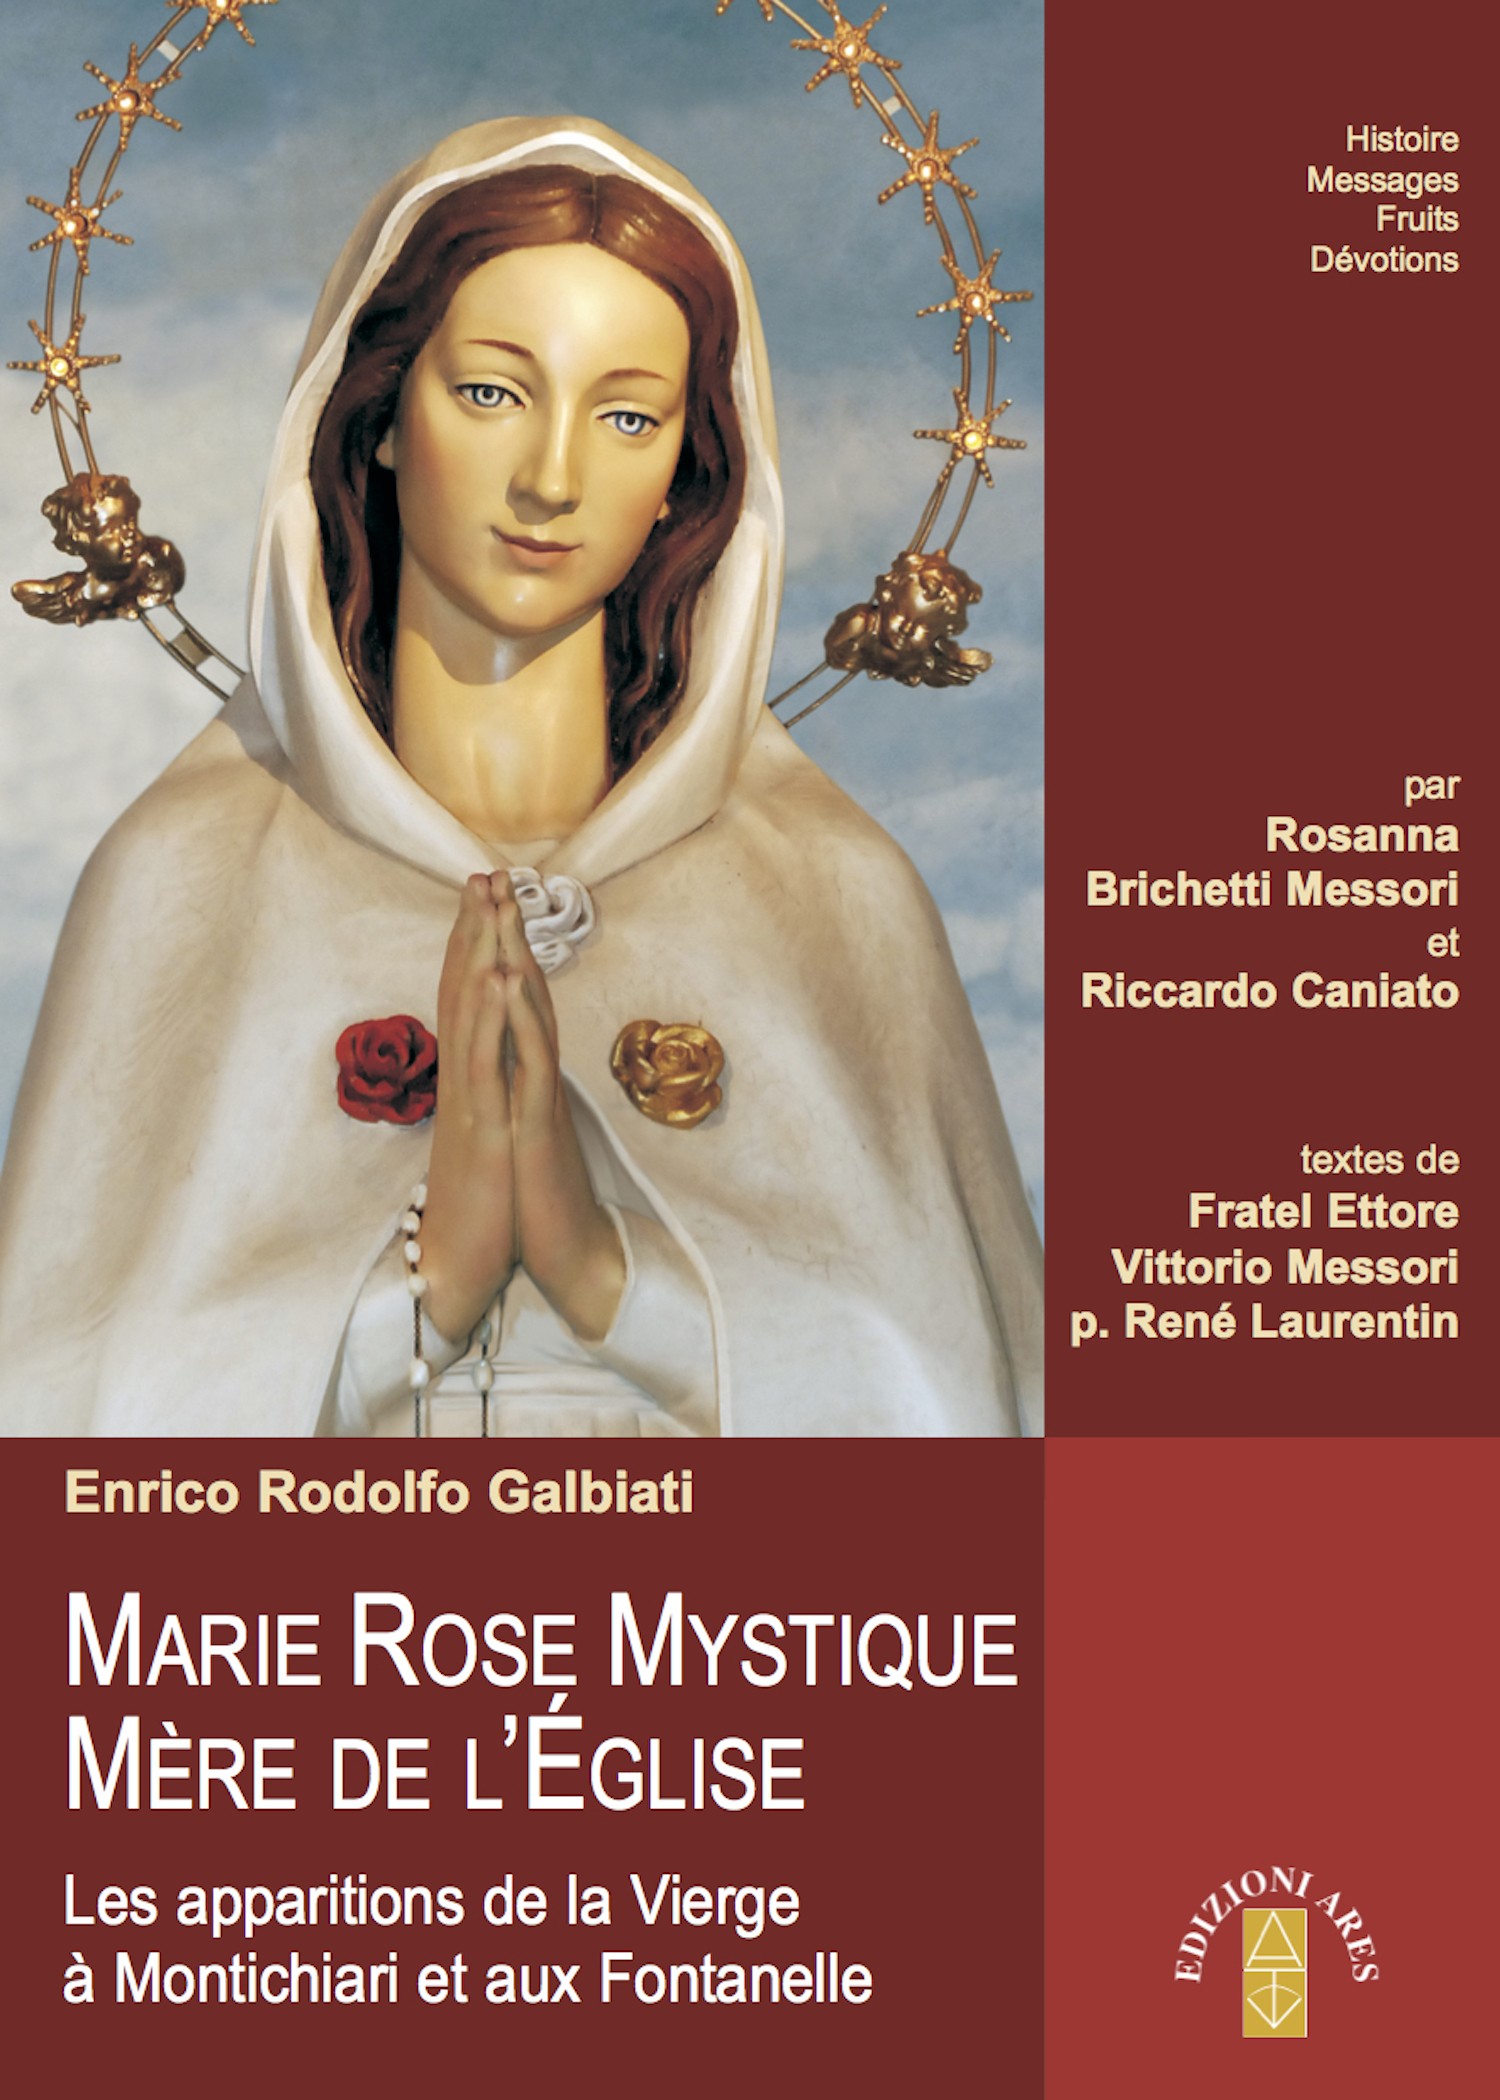 MARIE ROSE MYSTIQUE MÈRE DE L’ÉGLISE - Librerie.coop